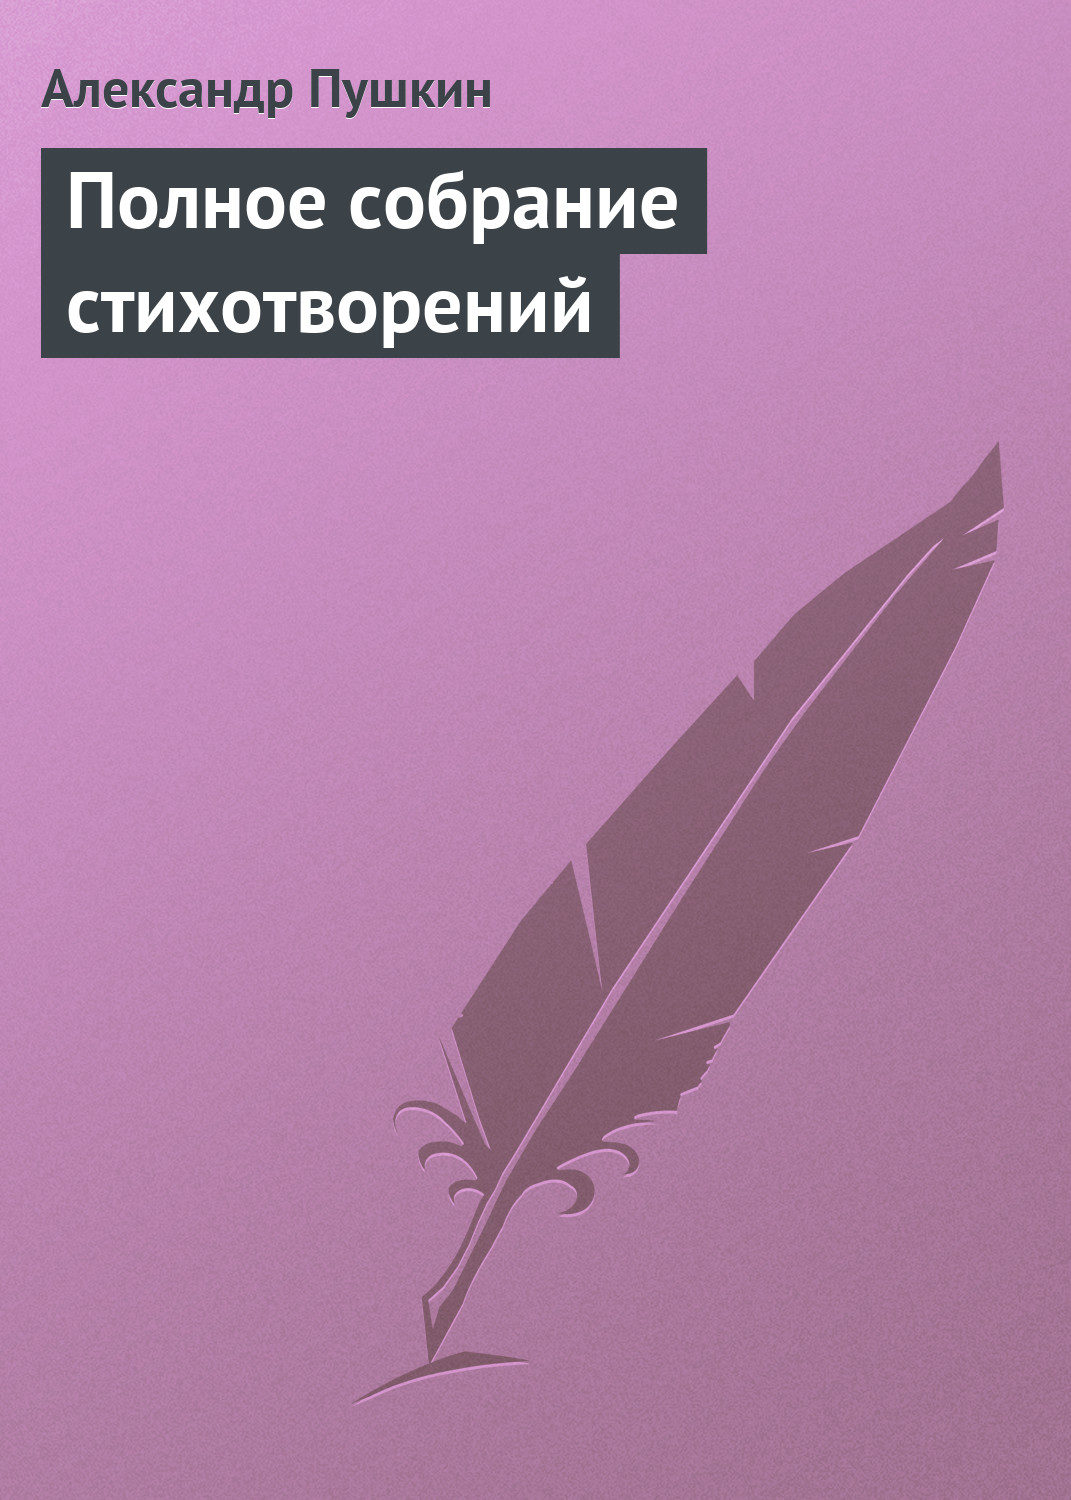 Скачать стихотворения пушкина в формате pdf